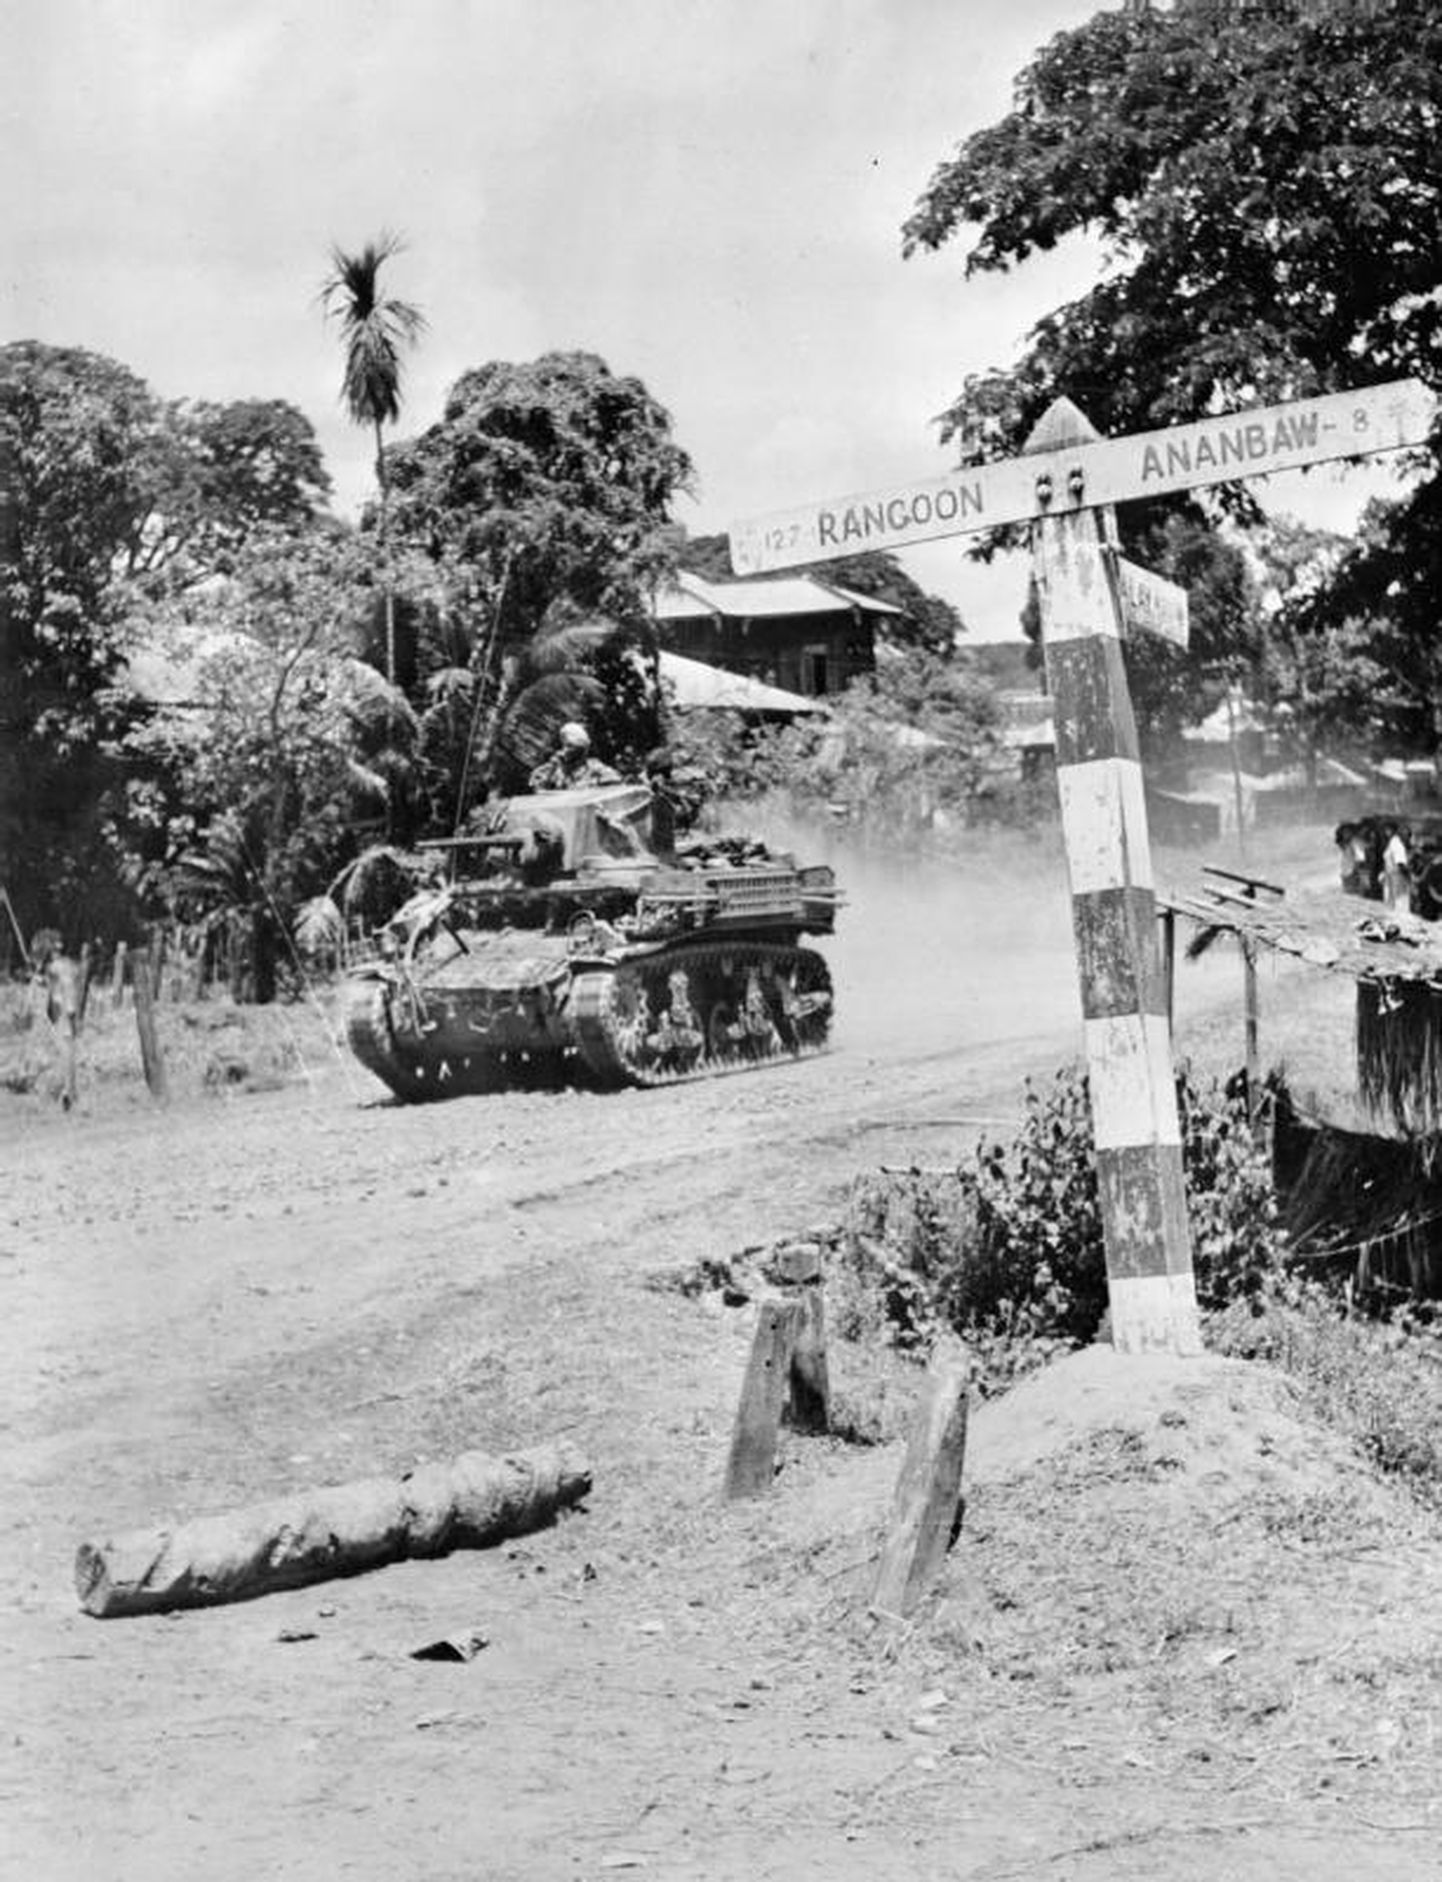 Briti tank liikumas Rangooni poole.